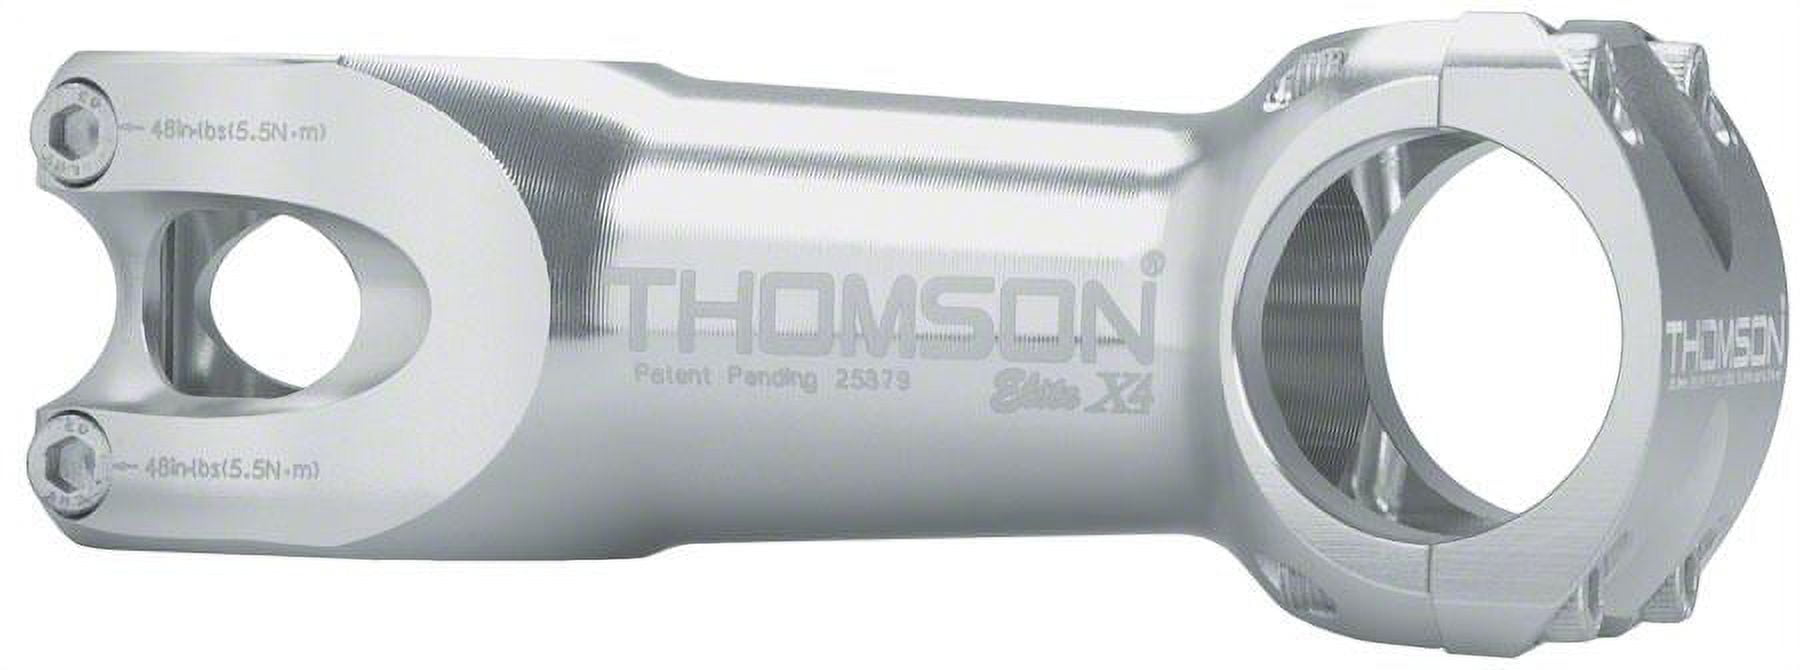 Thomson Elite X4 Mountain Stem 90mm +/- 10 degree 31.8 1-1/8